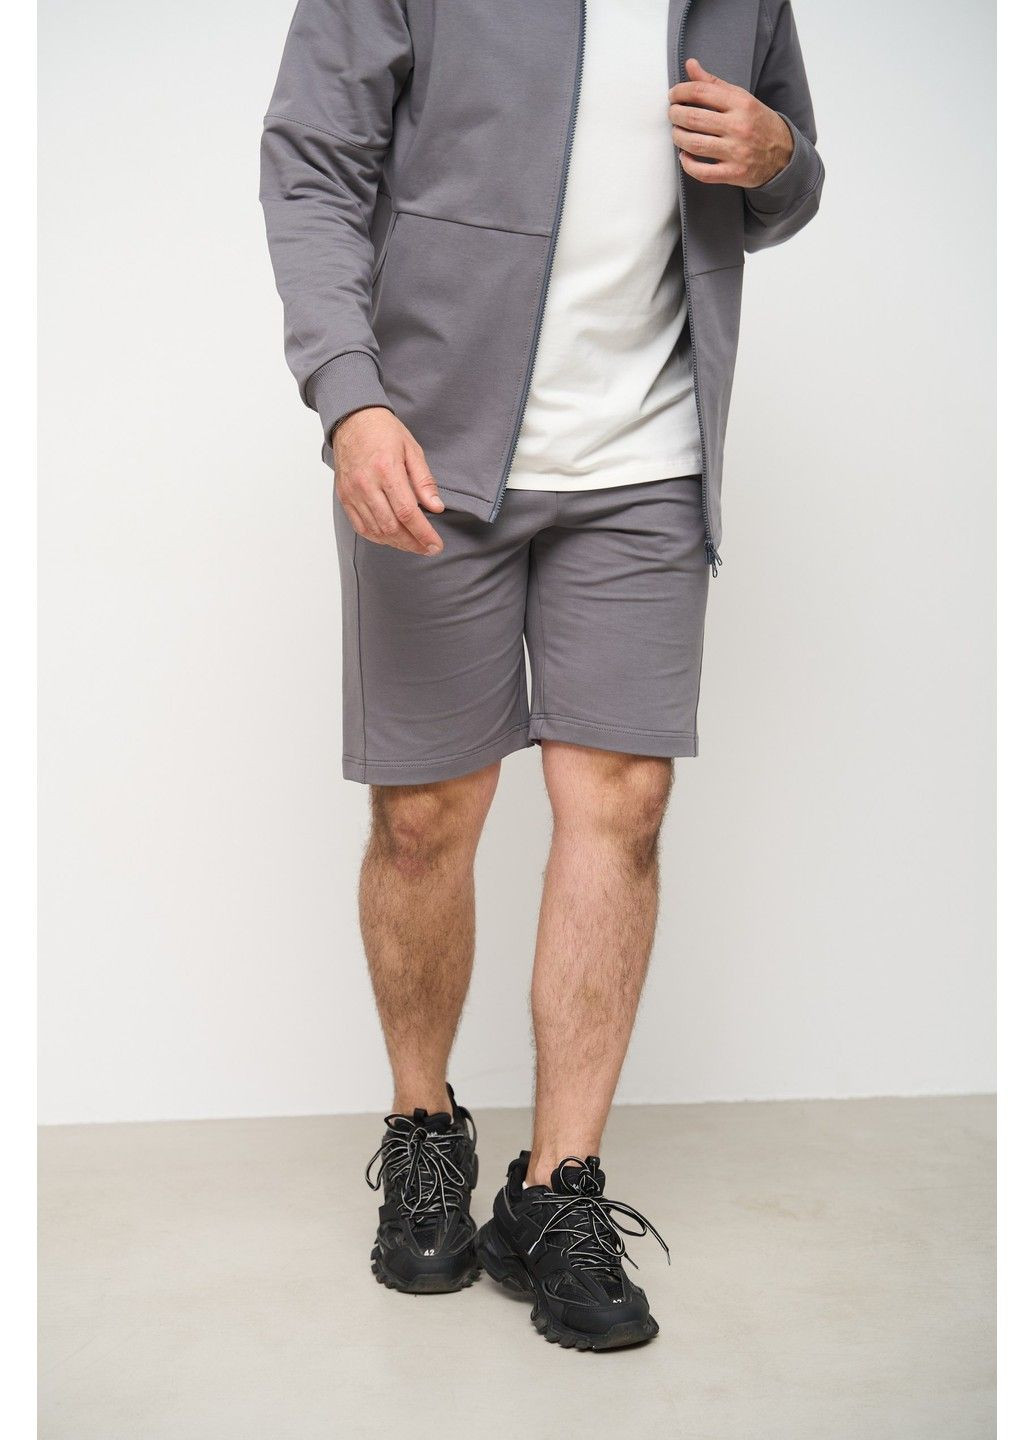 Спортивный костюм мужской ТРОЙКА лето SUMMER с кофтой на замке + шорты серый + футболка молочная Handy Wear (293510741)